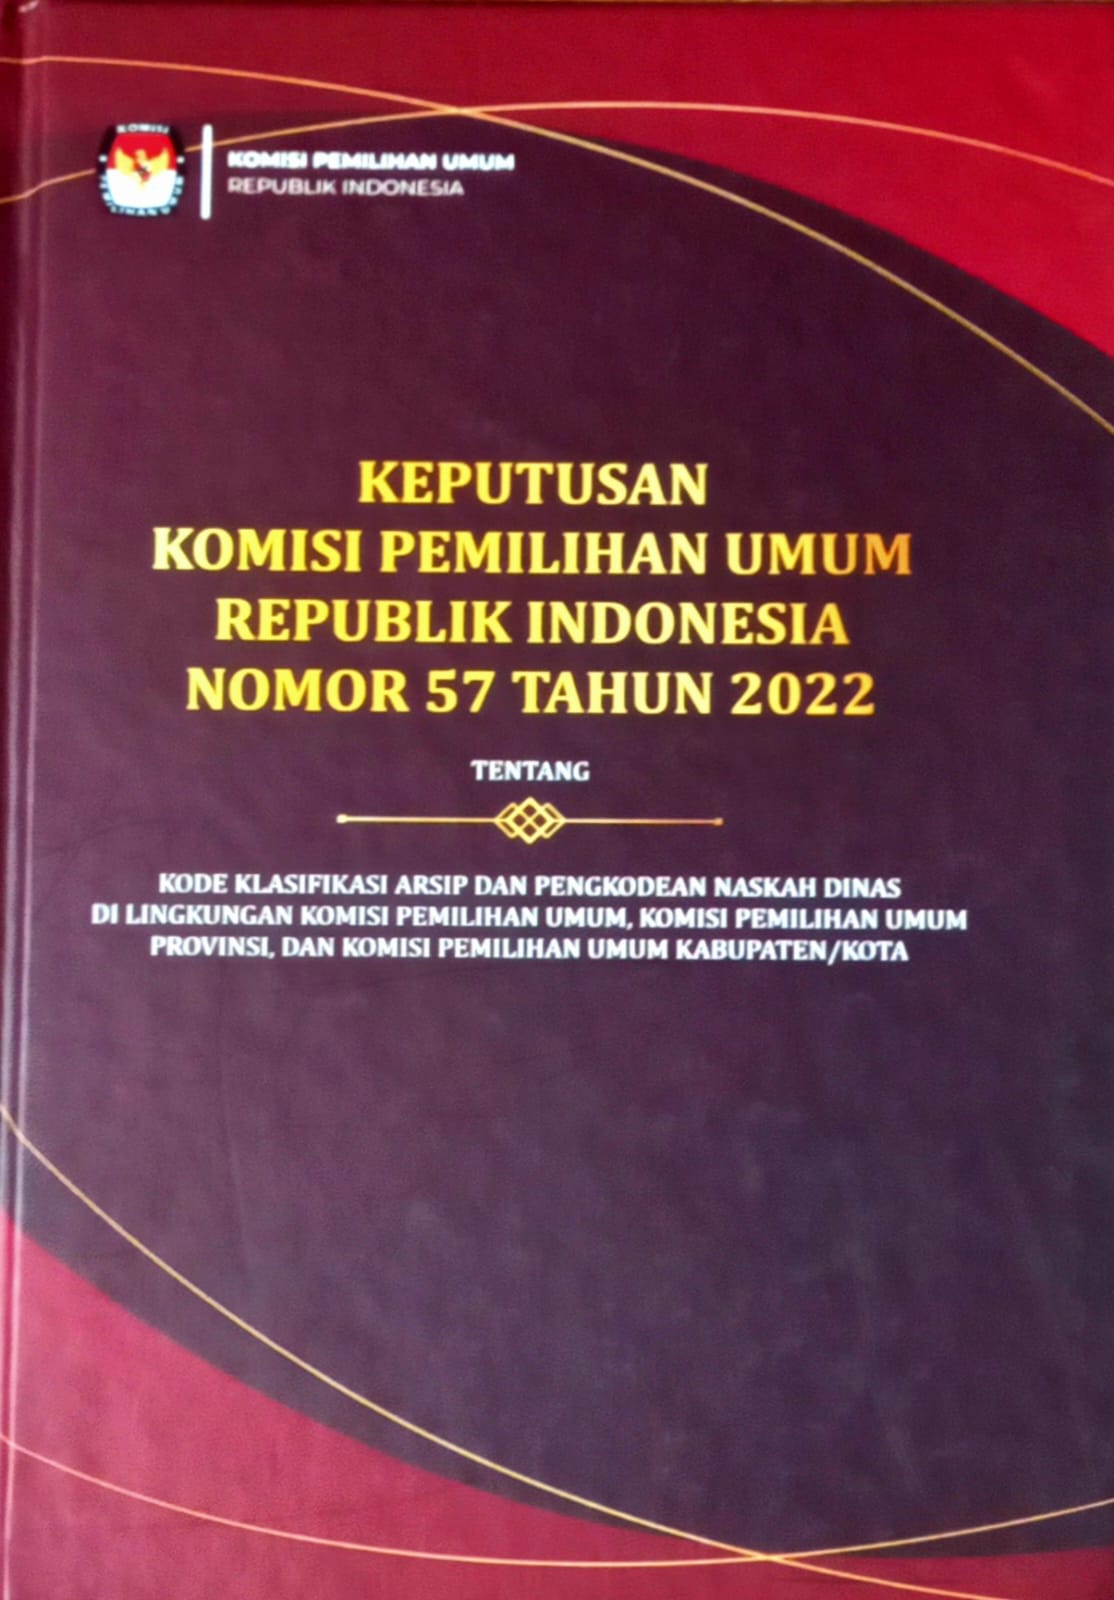 KEPUTUSAN KOMISI PEMILIHAN UMUM REPUBLIK INDONESIA NOMOR 57 TAHUN 2022